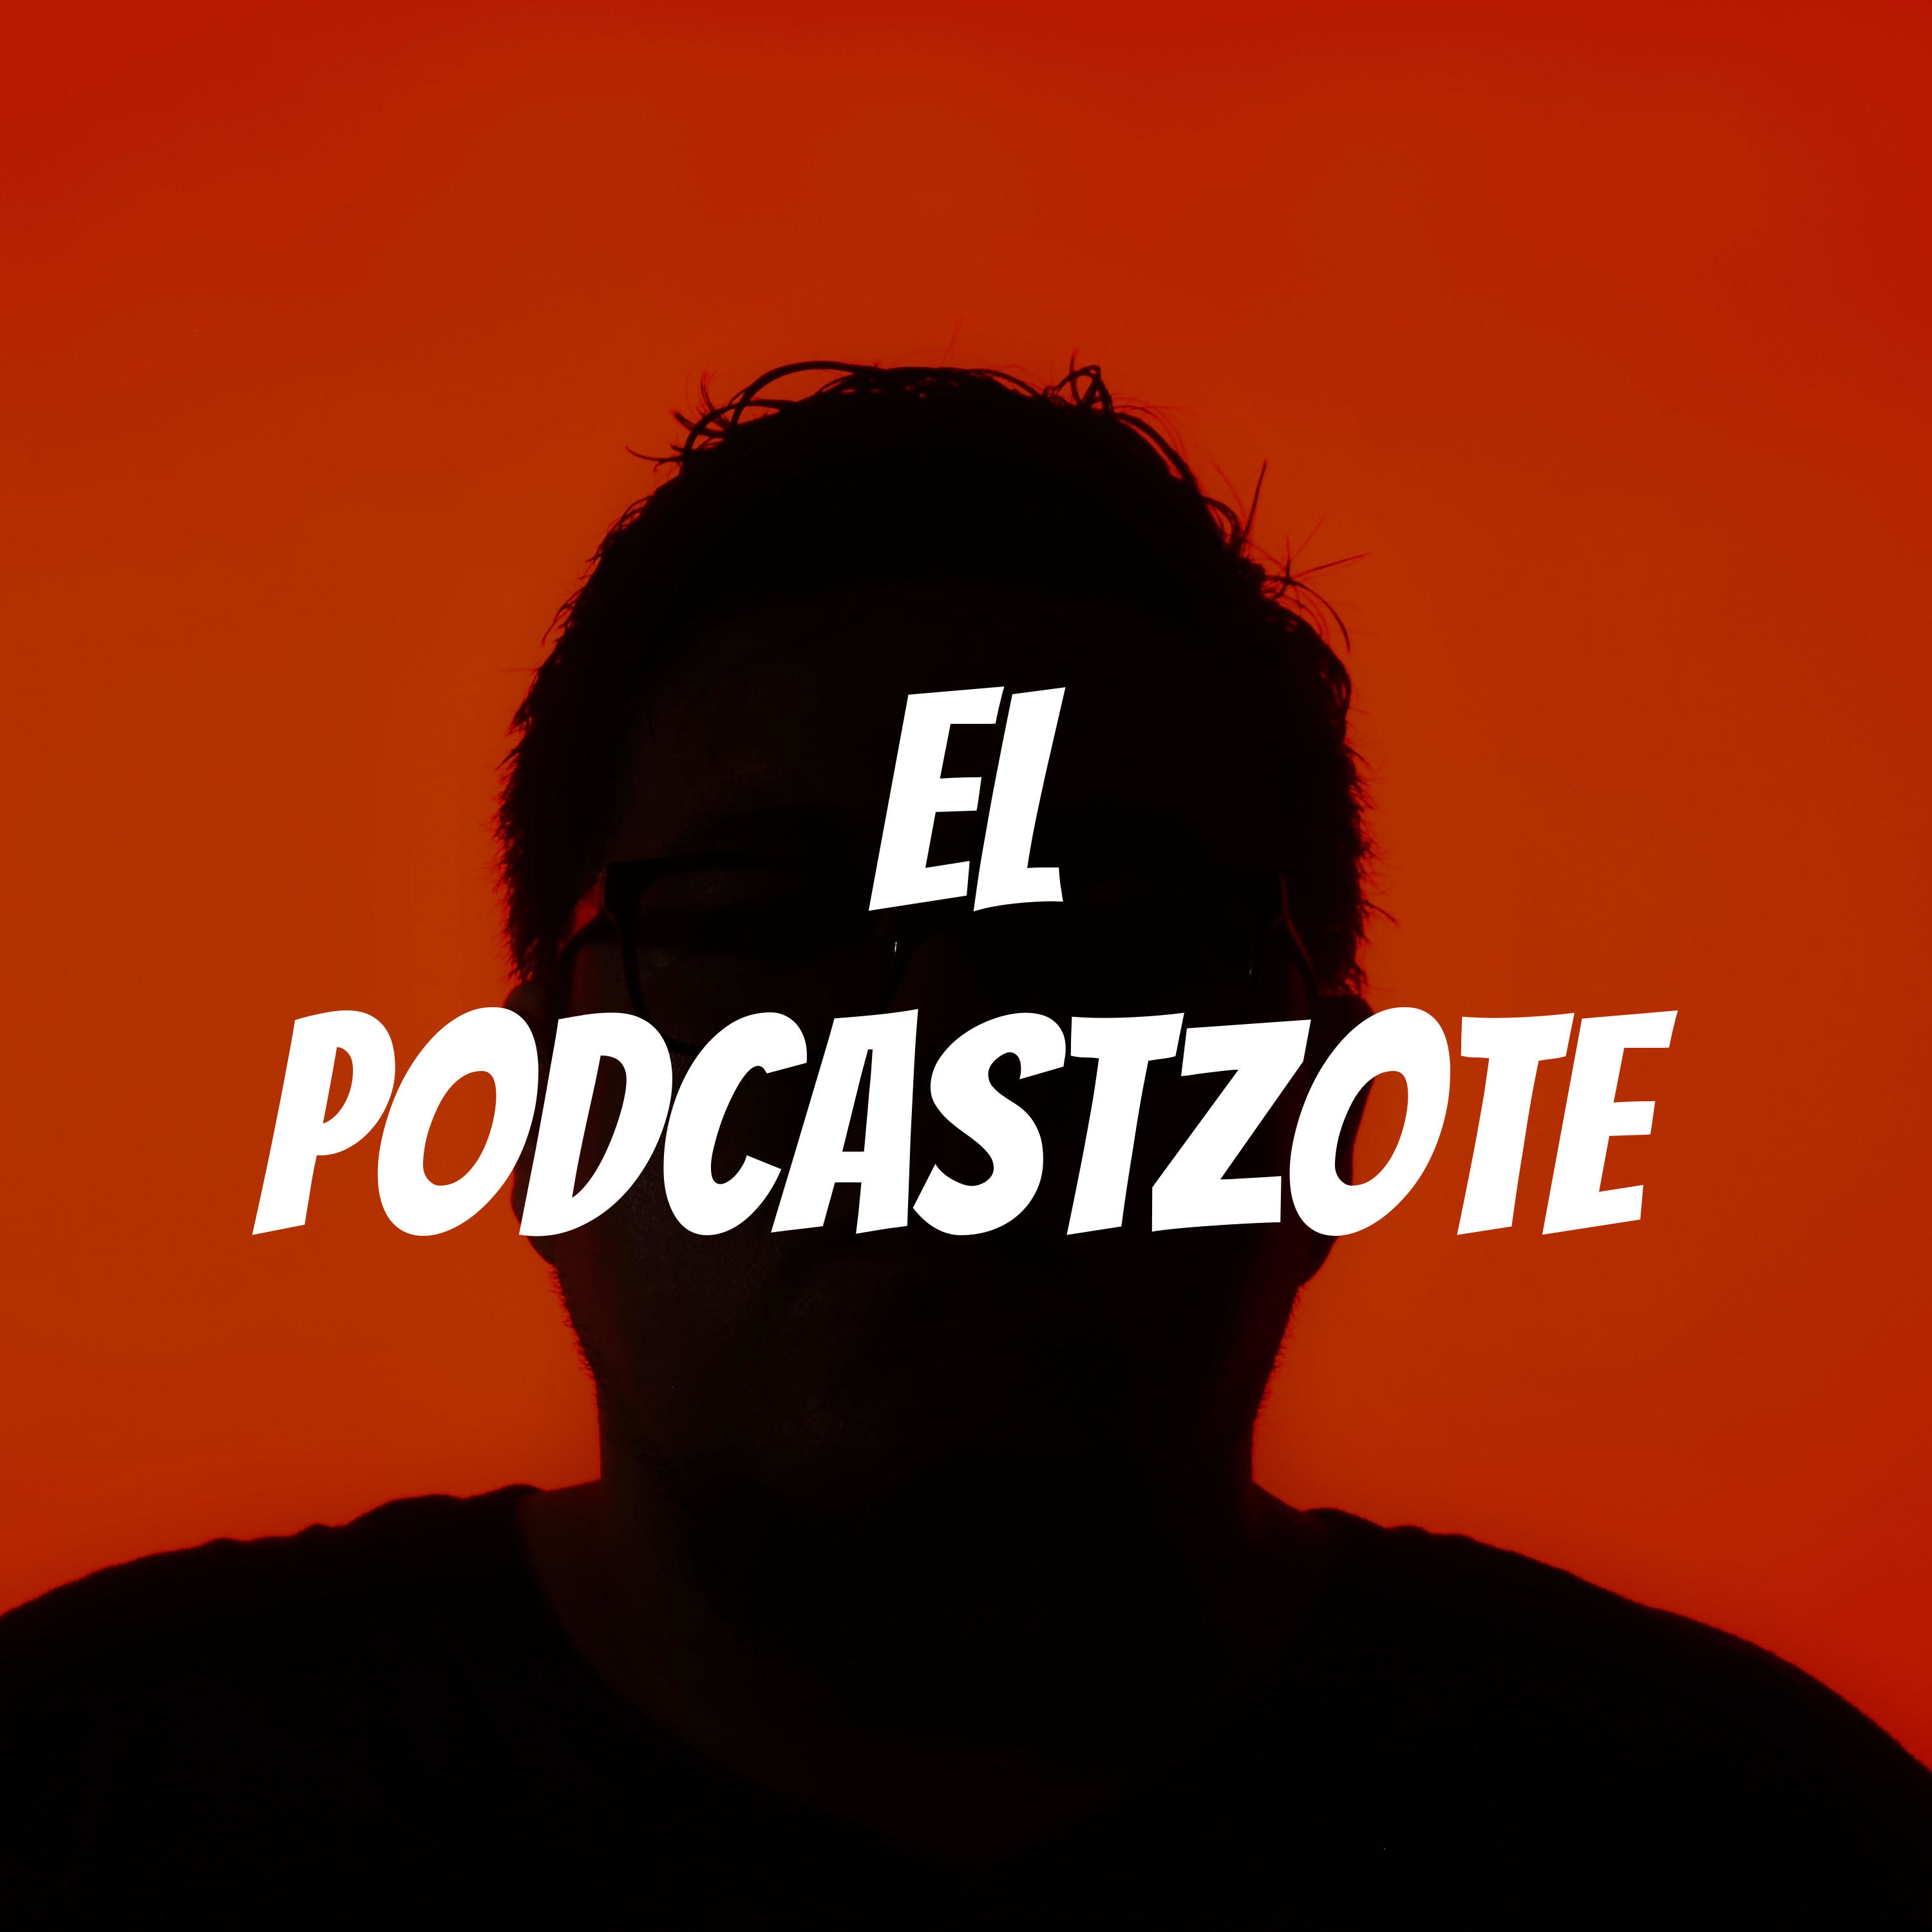 El podcastzote